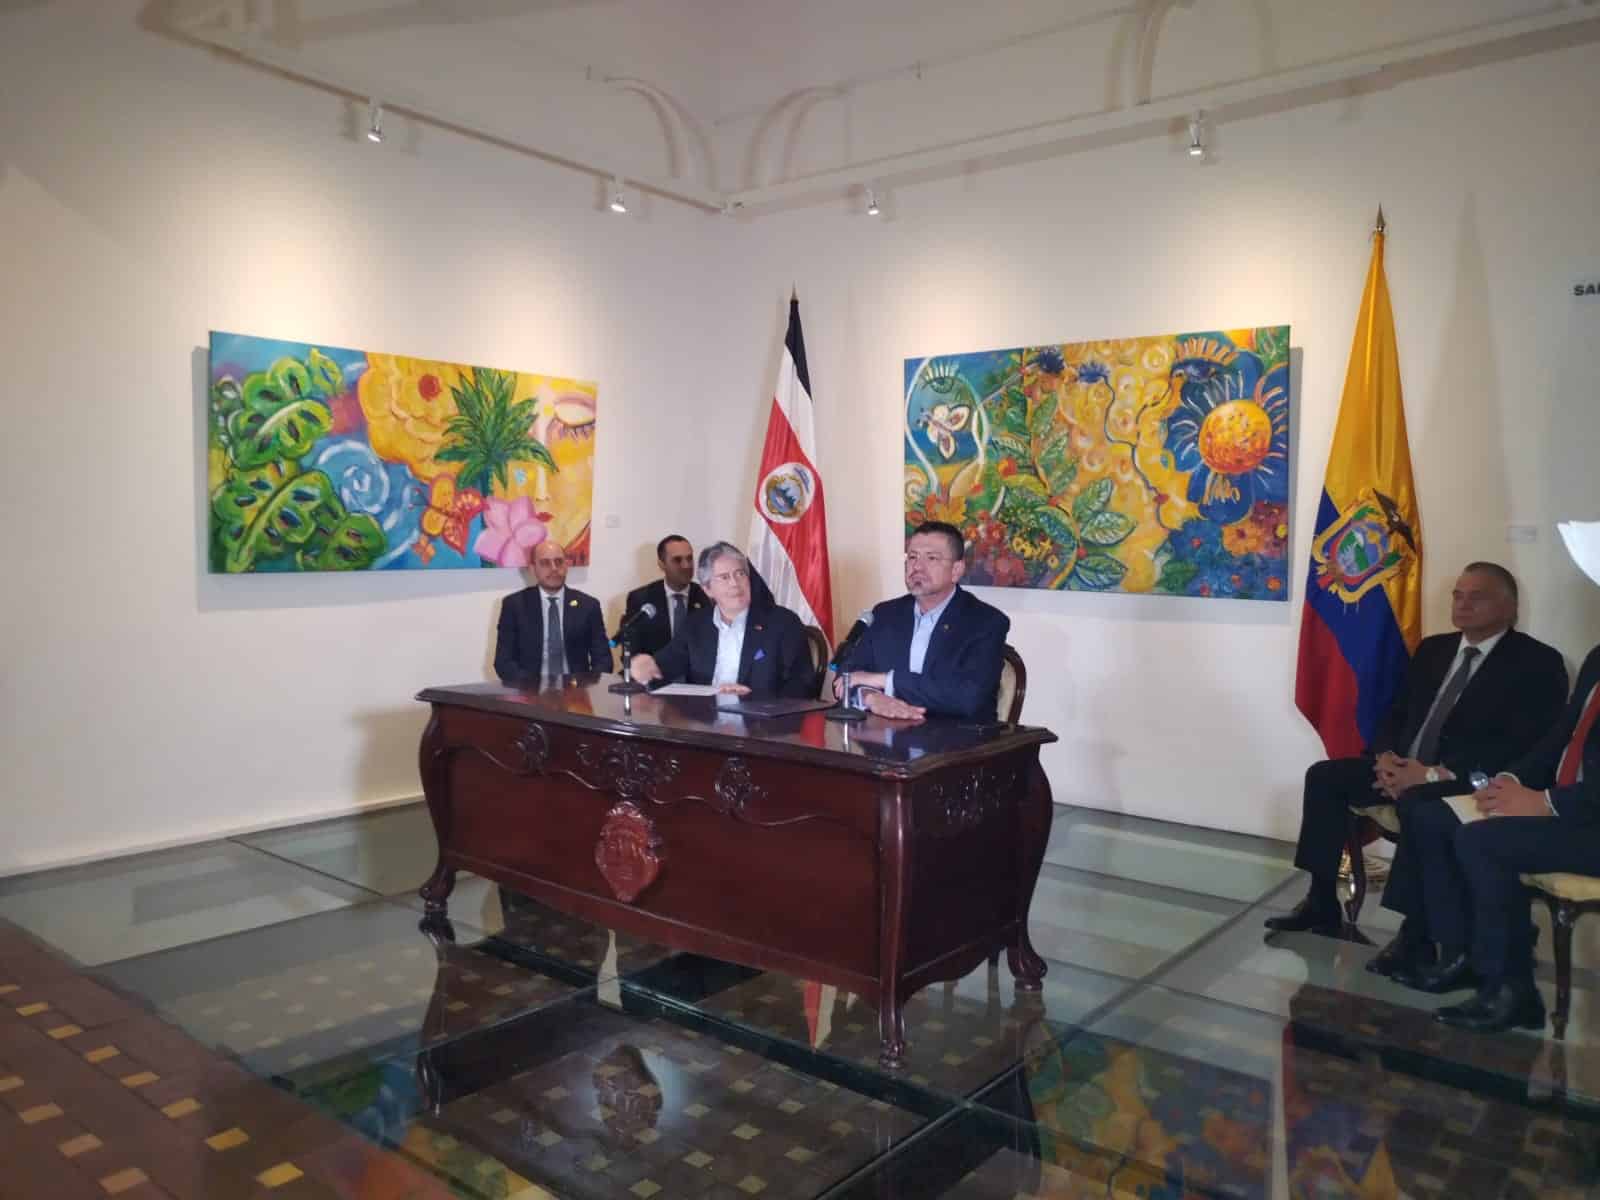 Presidentes de Costa Rica y Ecuador esperan que Perú y México resuelvan diferencias en el marco de la Alianza del Pacífico